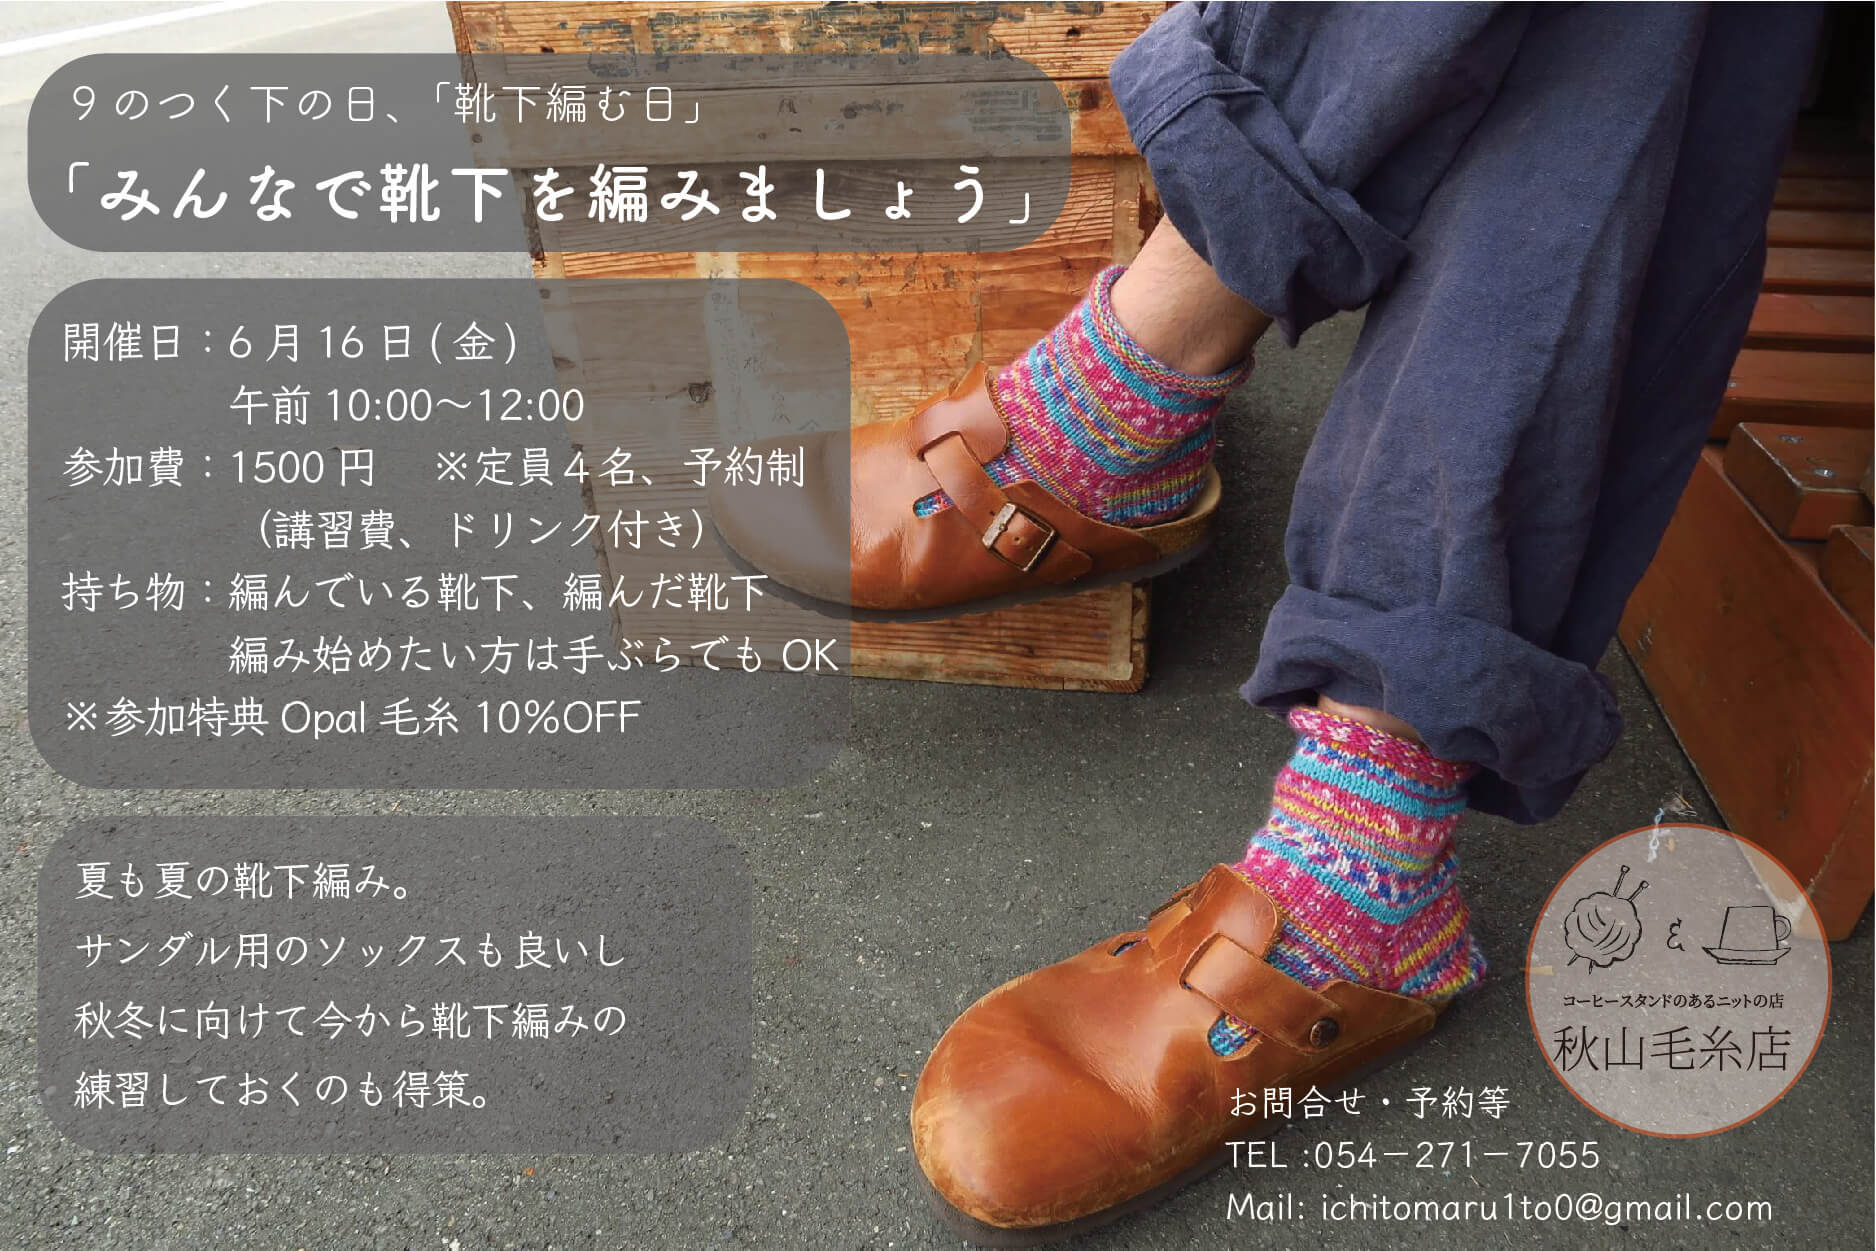 【イベント終了】6月16日(金) 9のつく下の日の「みんなで靴下編みましょう」の会